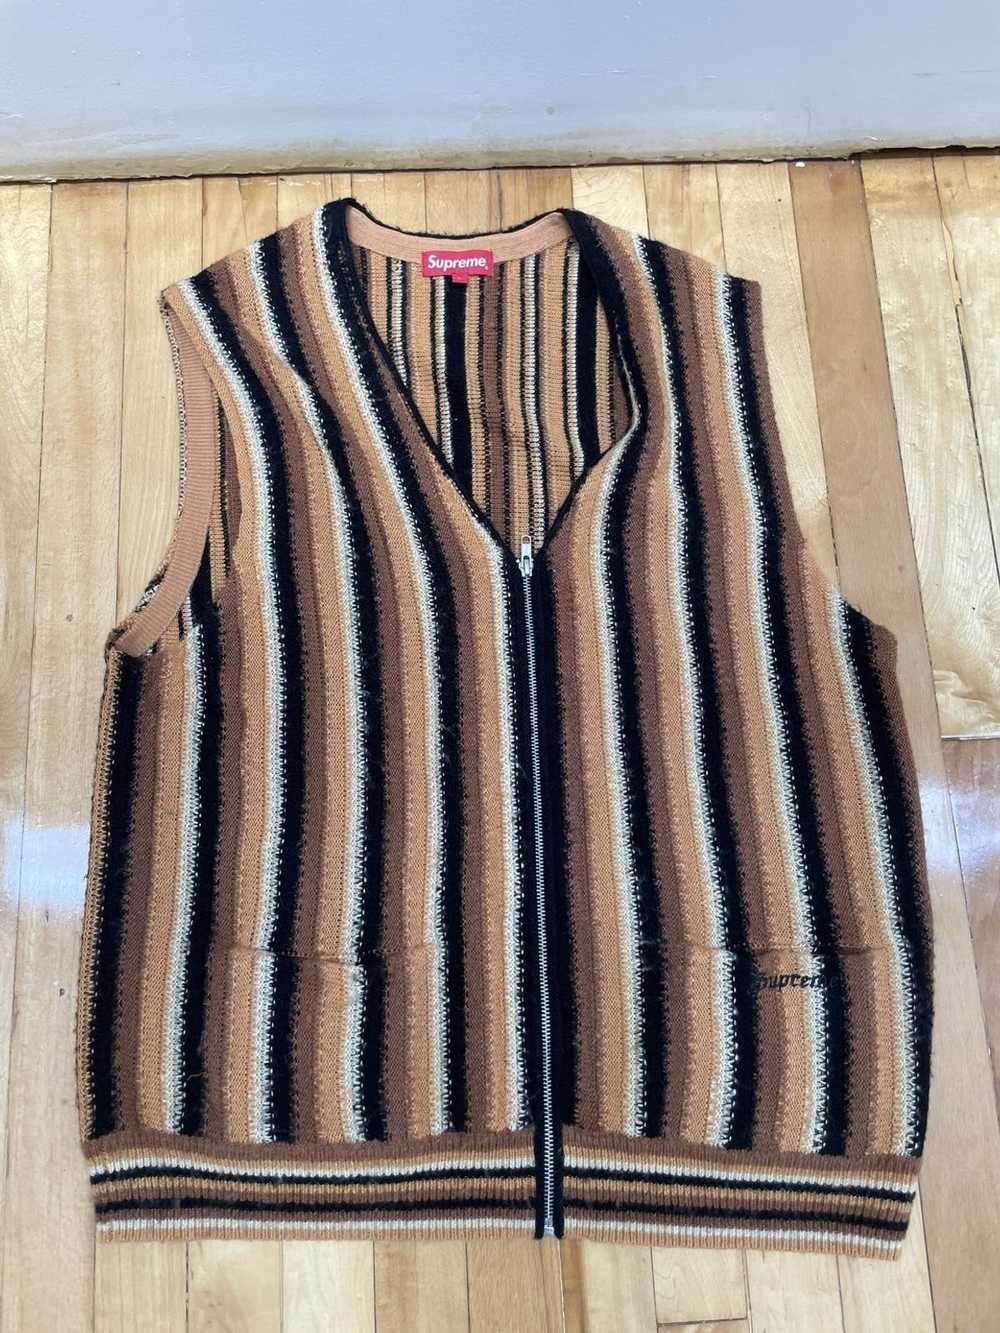 Supreme Supreme Stripped Sweater Vest Brown (L) - image 1